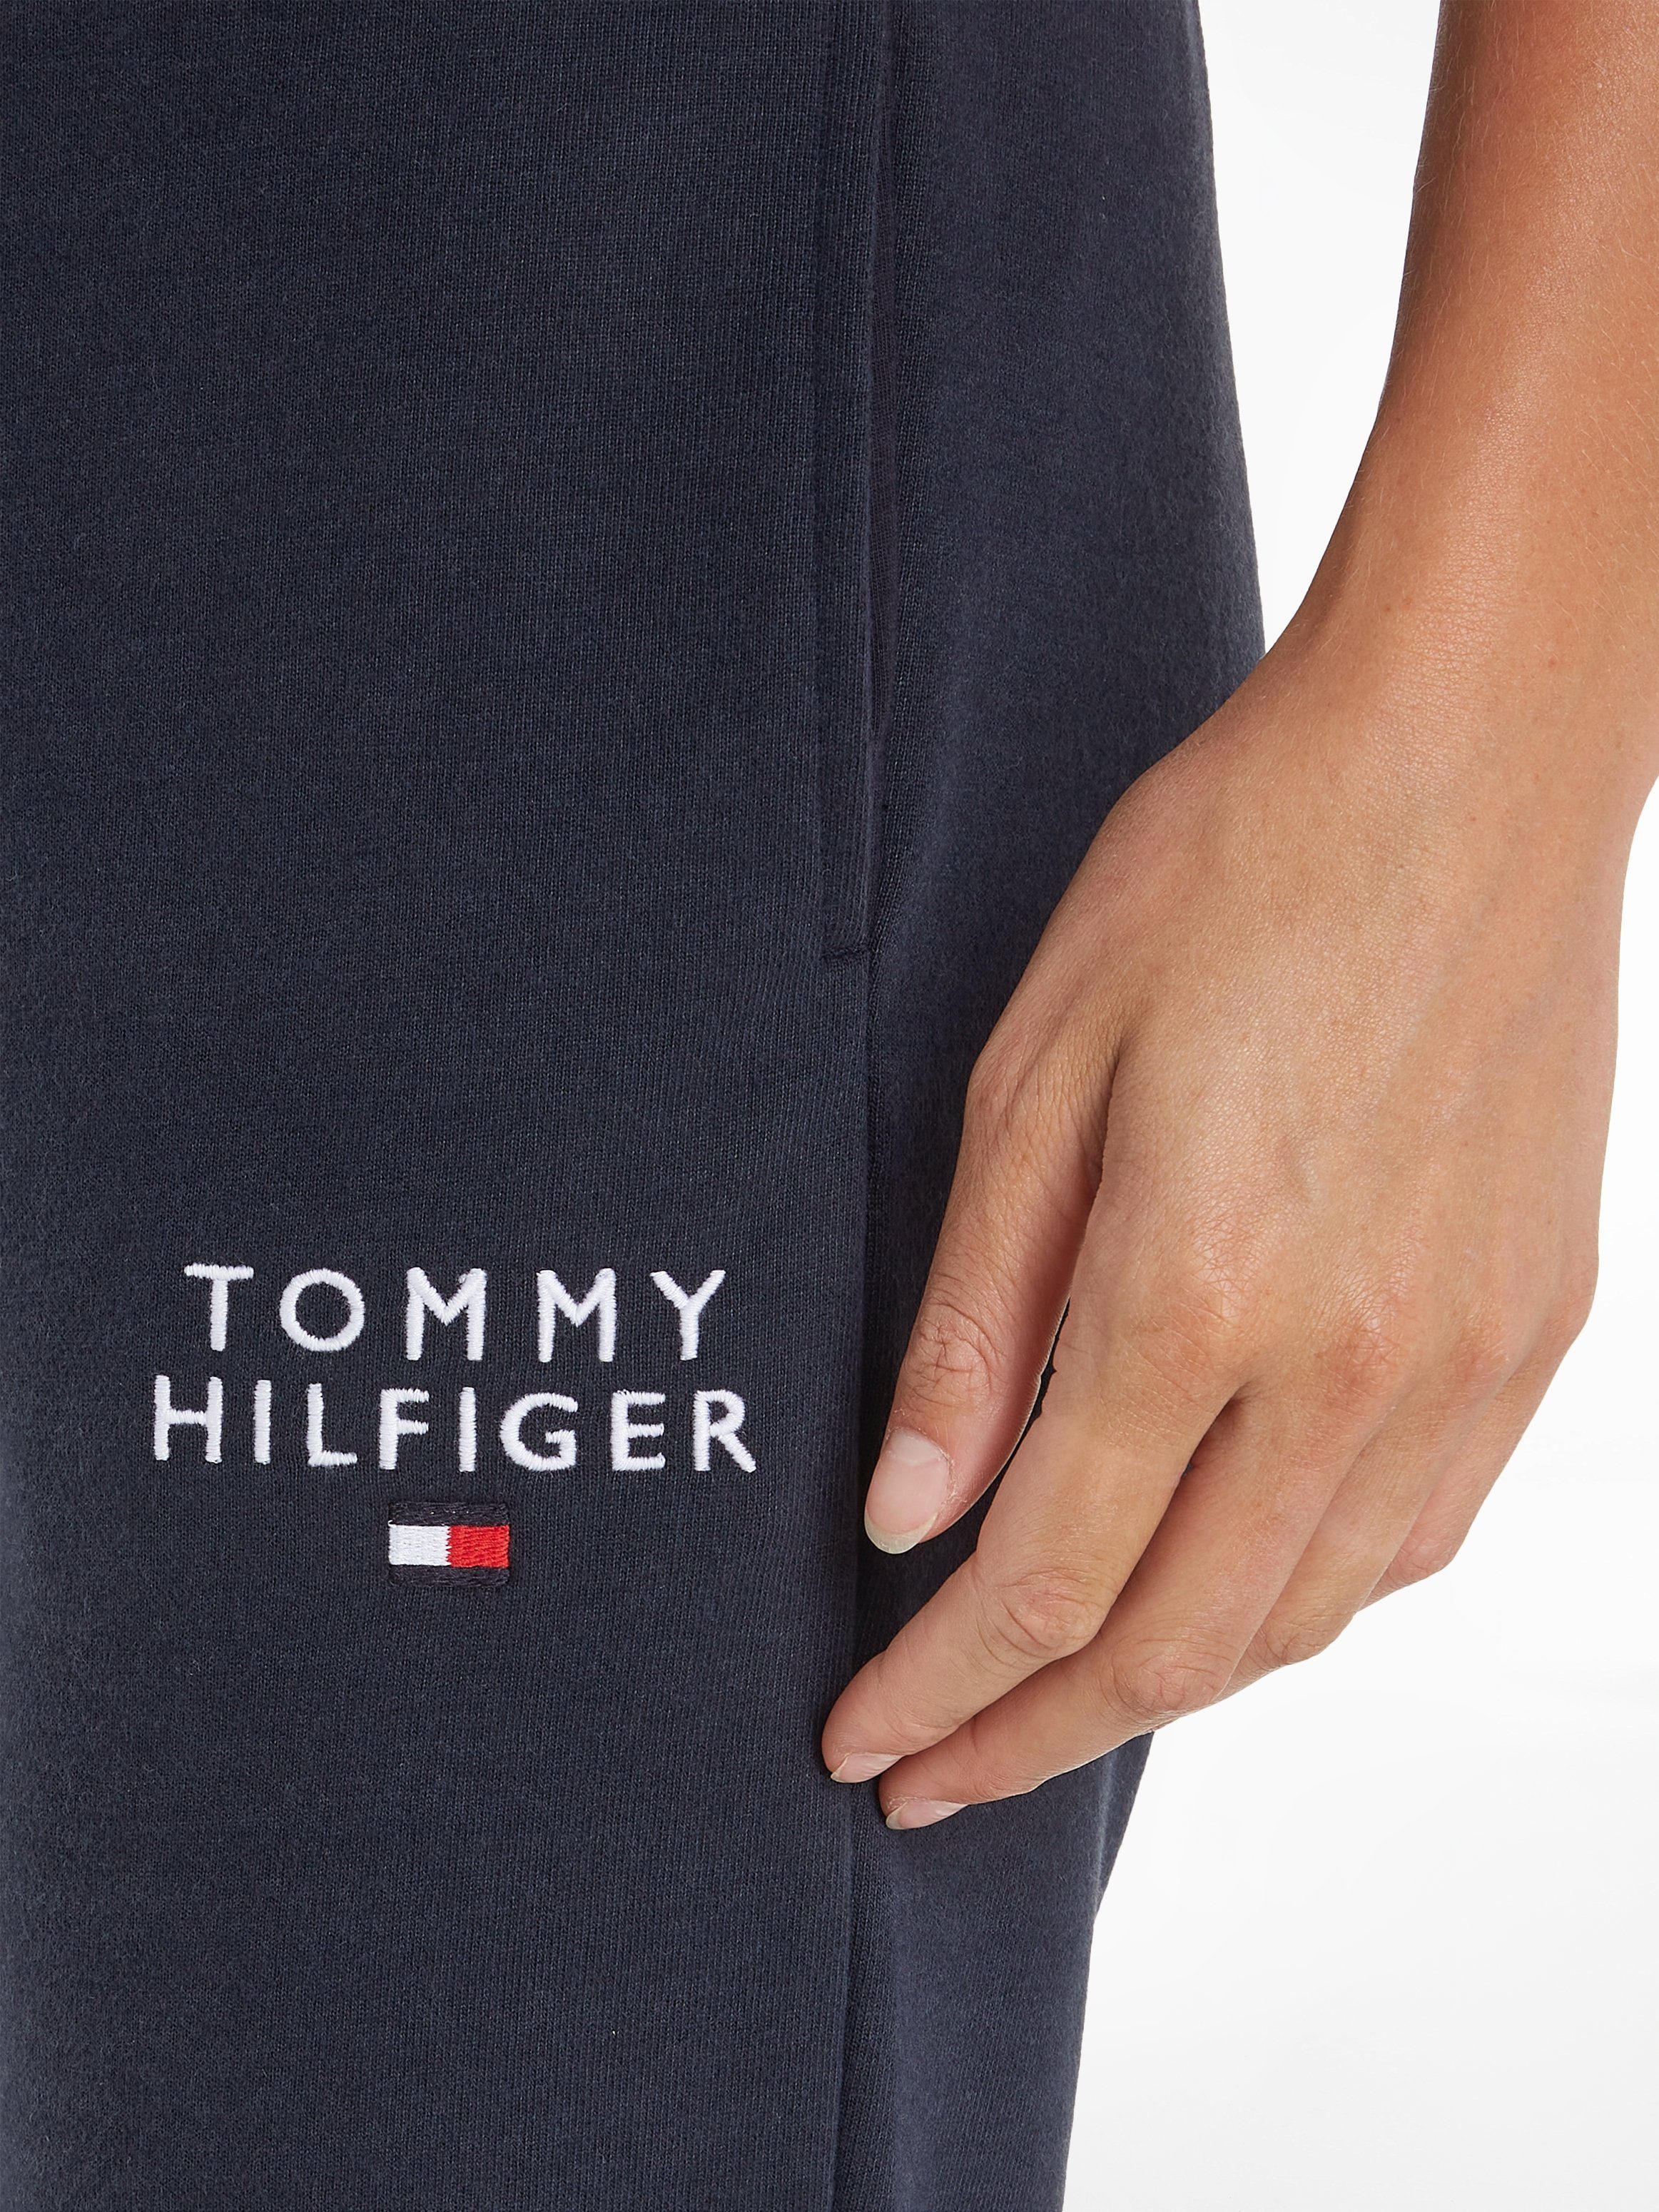 PANTS Hilfiger Tommy TRACK mit Markenlogo-Aufdruck Underwear Hilfiger Sweathose Tommy